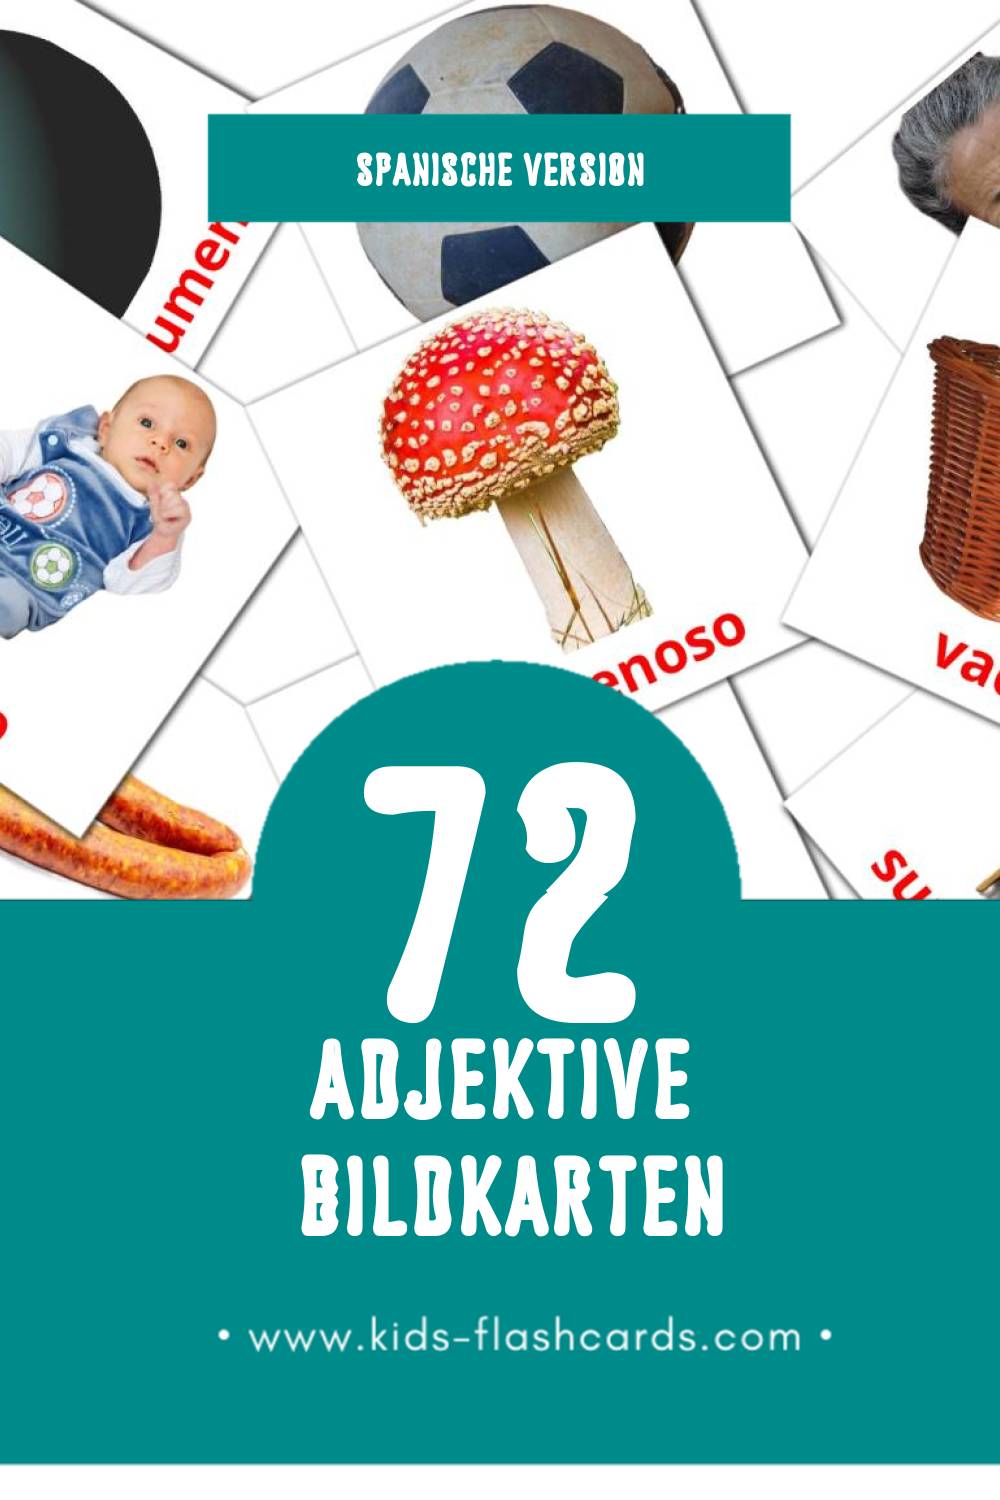 Visual Adjetivos  Flashcards für Kleinkinder (74 Karten in Spanisch)